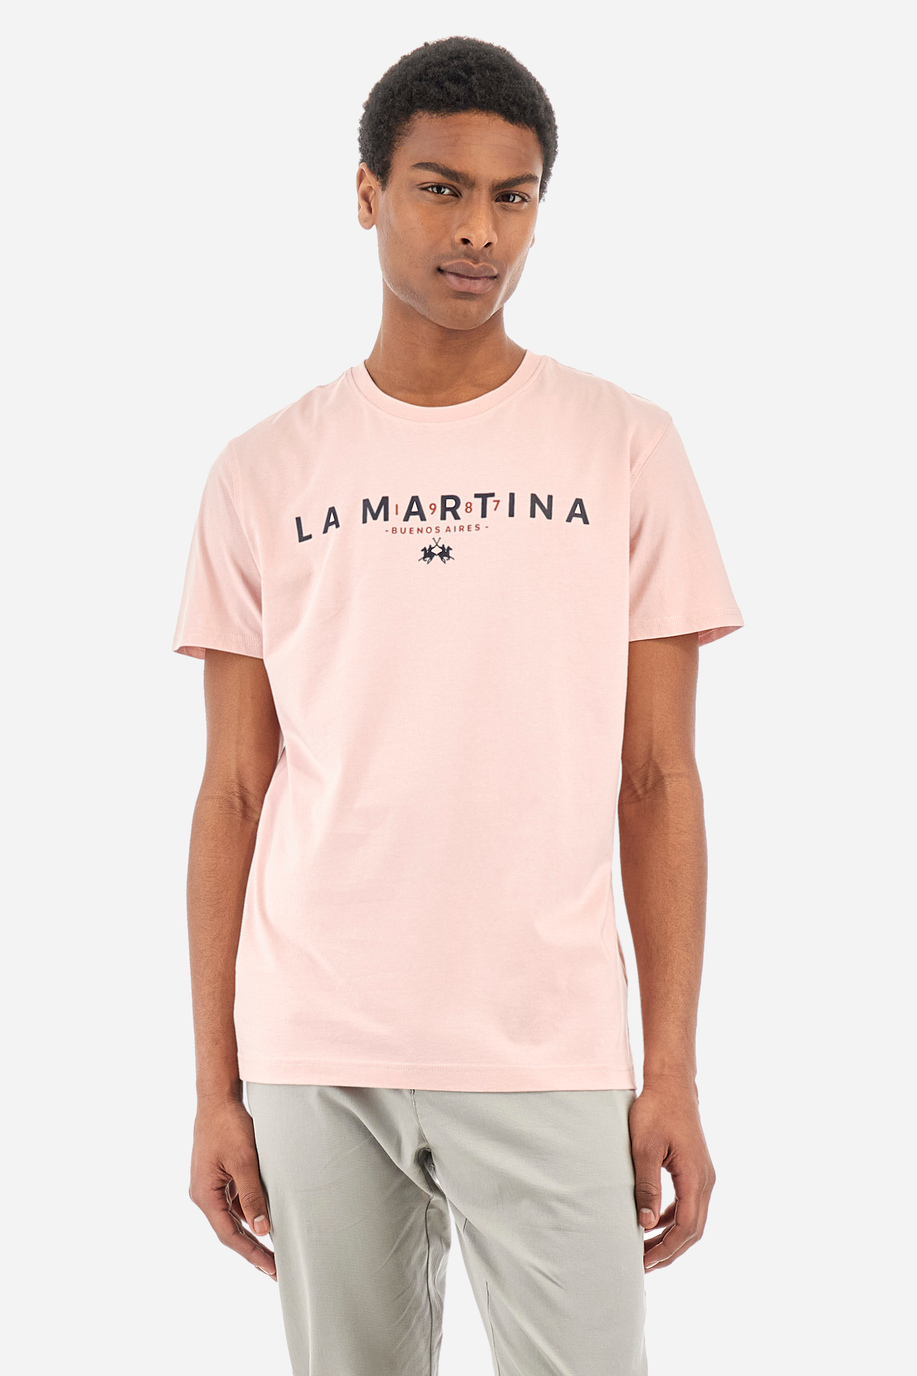 T-shirt da uomo regular fit - Yann - T-shirt | La Martina - Official Online Shop